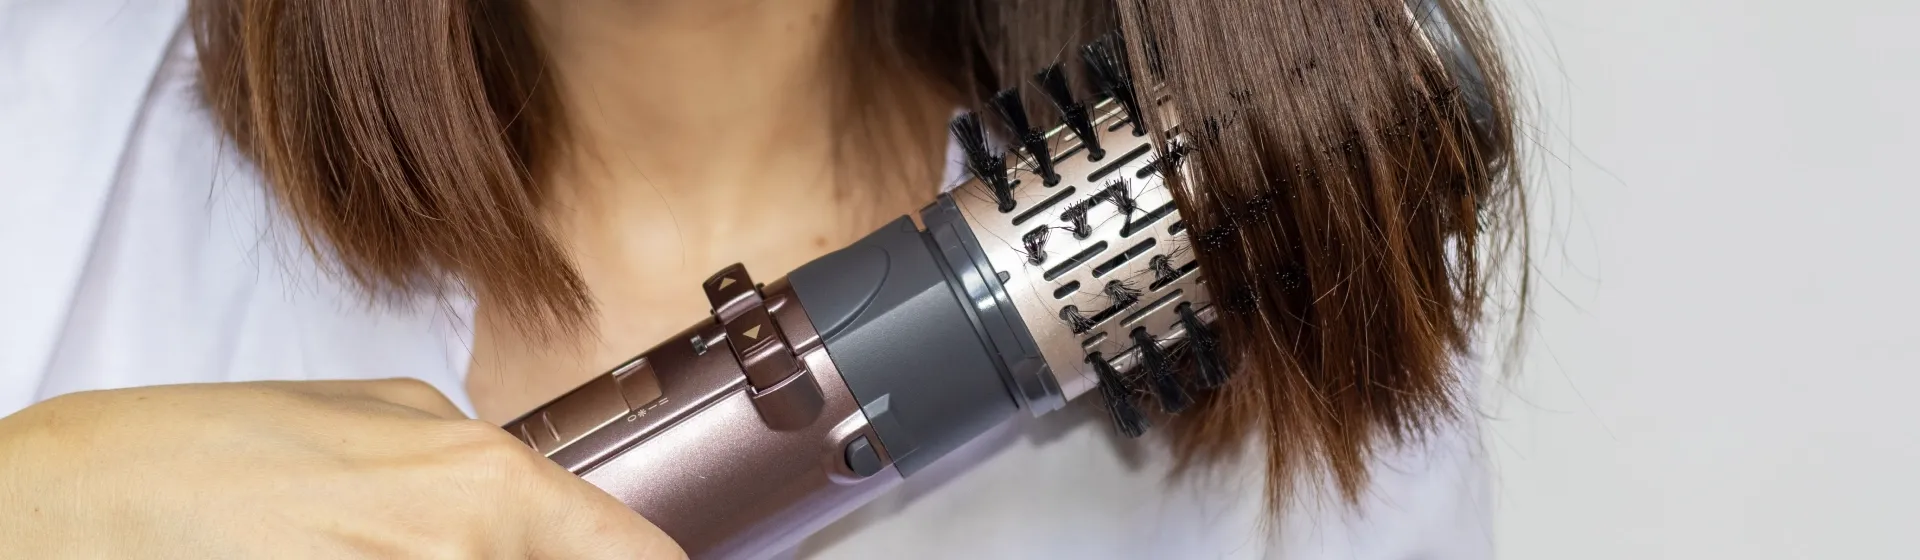 SOLUÇÃO:Secador de cabelo parou de funcionar só esquenta - Taiff Tourmaline  ion cerâmica 